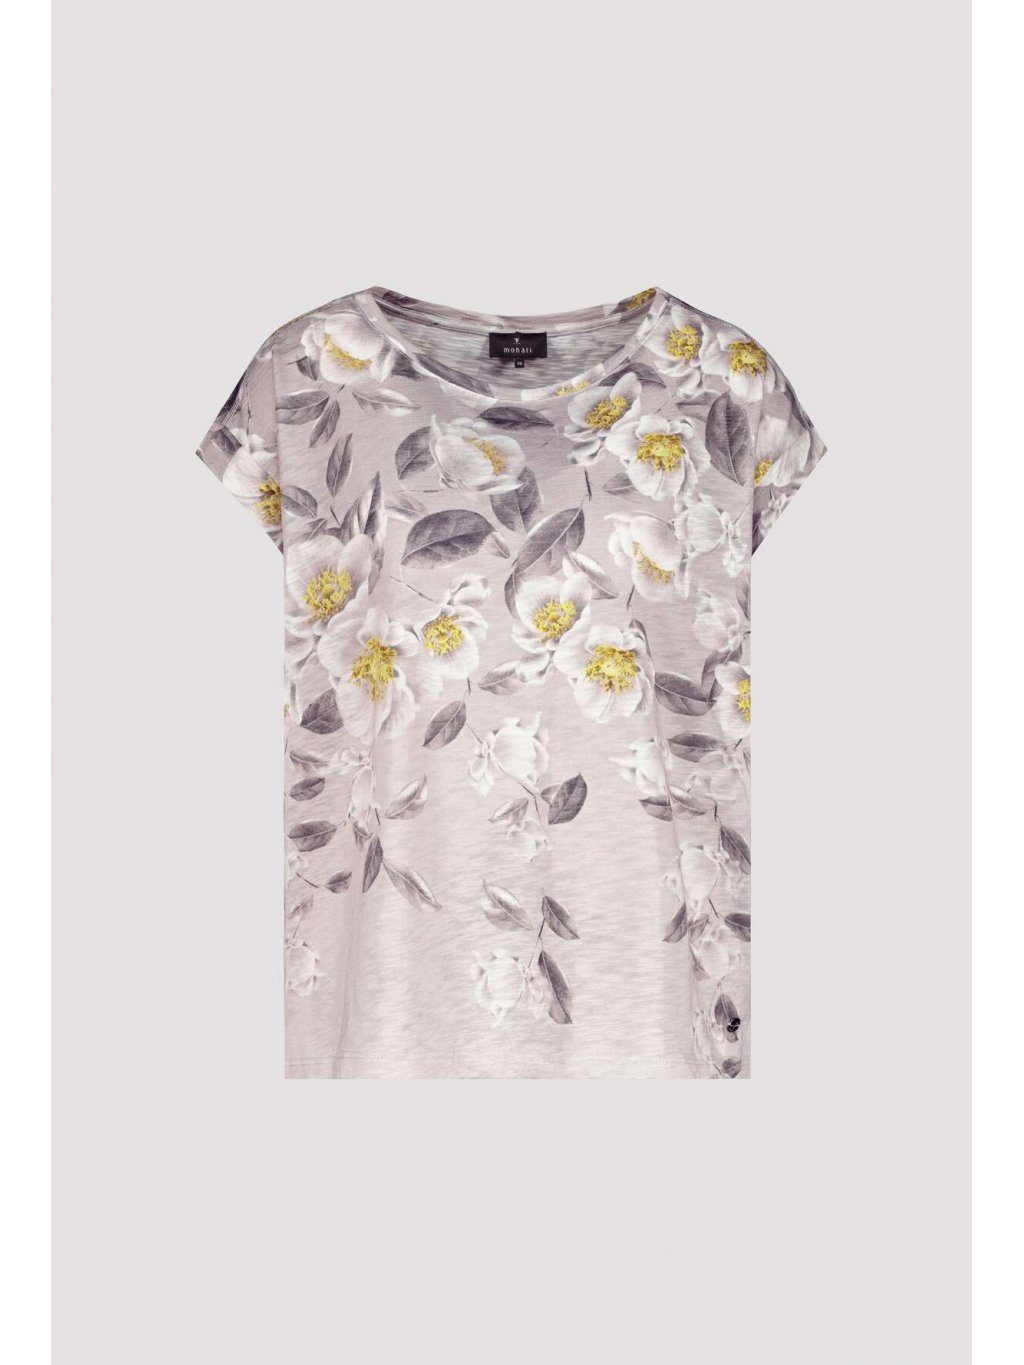 Tričko Monari 8661 s květinovým vzorem 